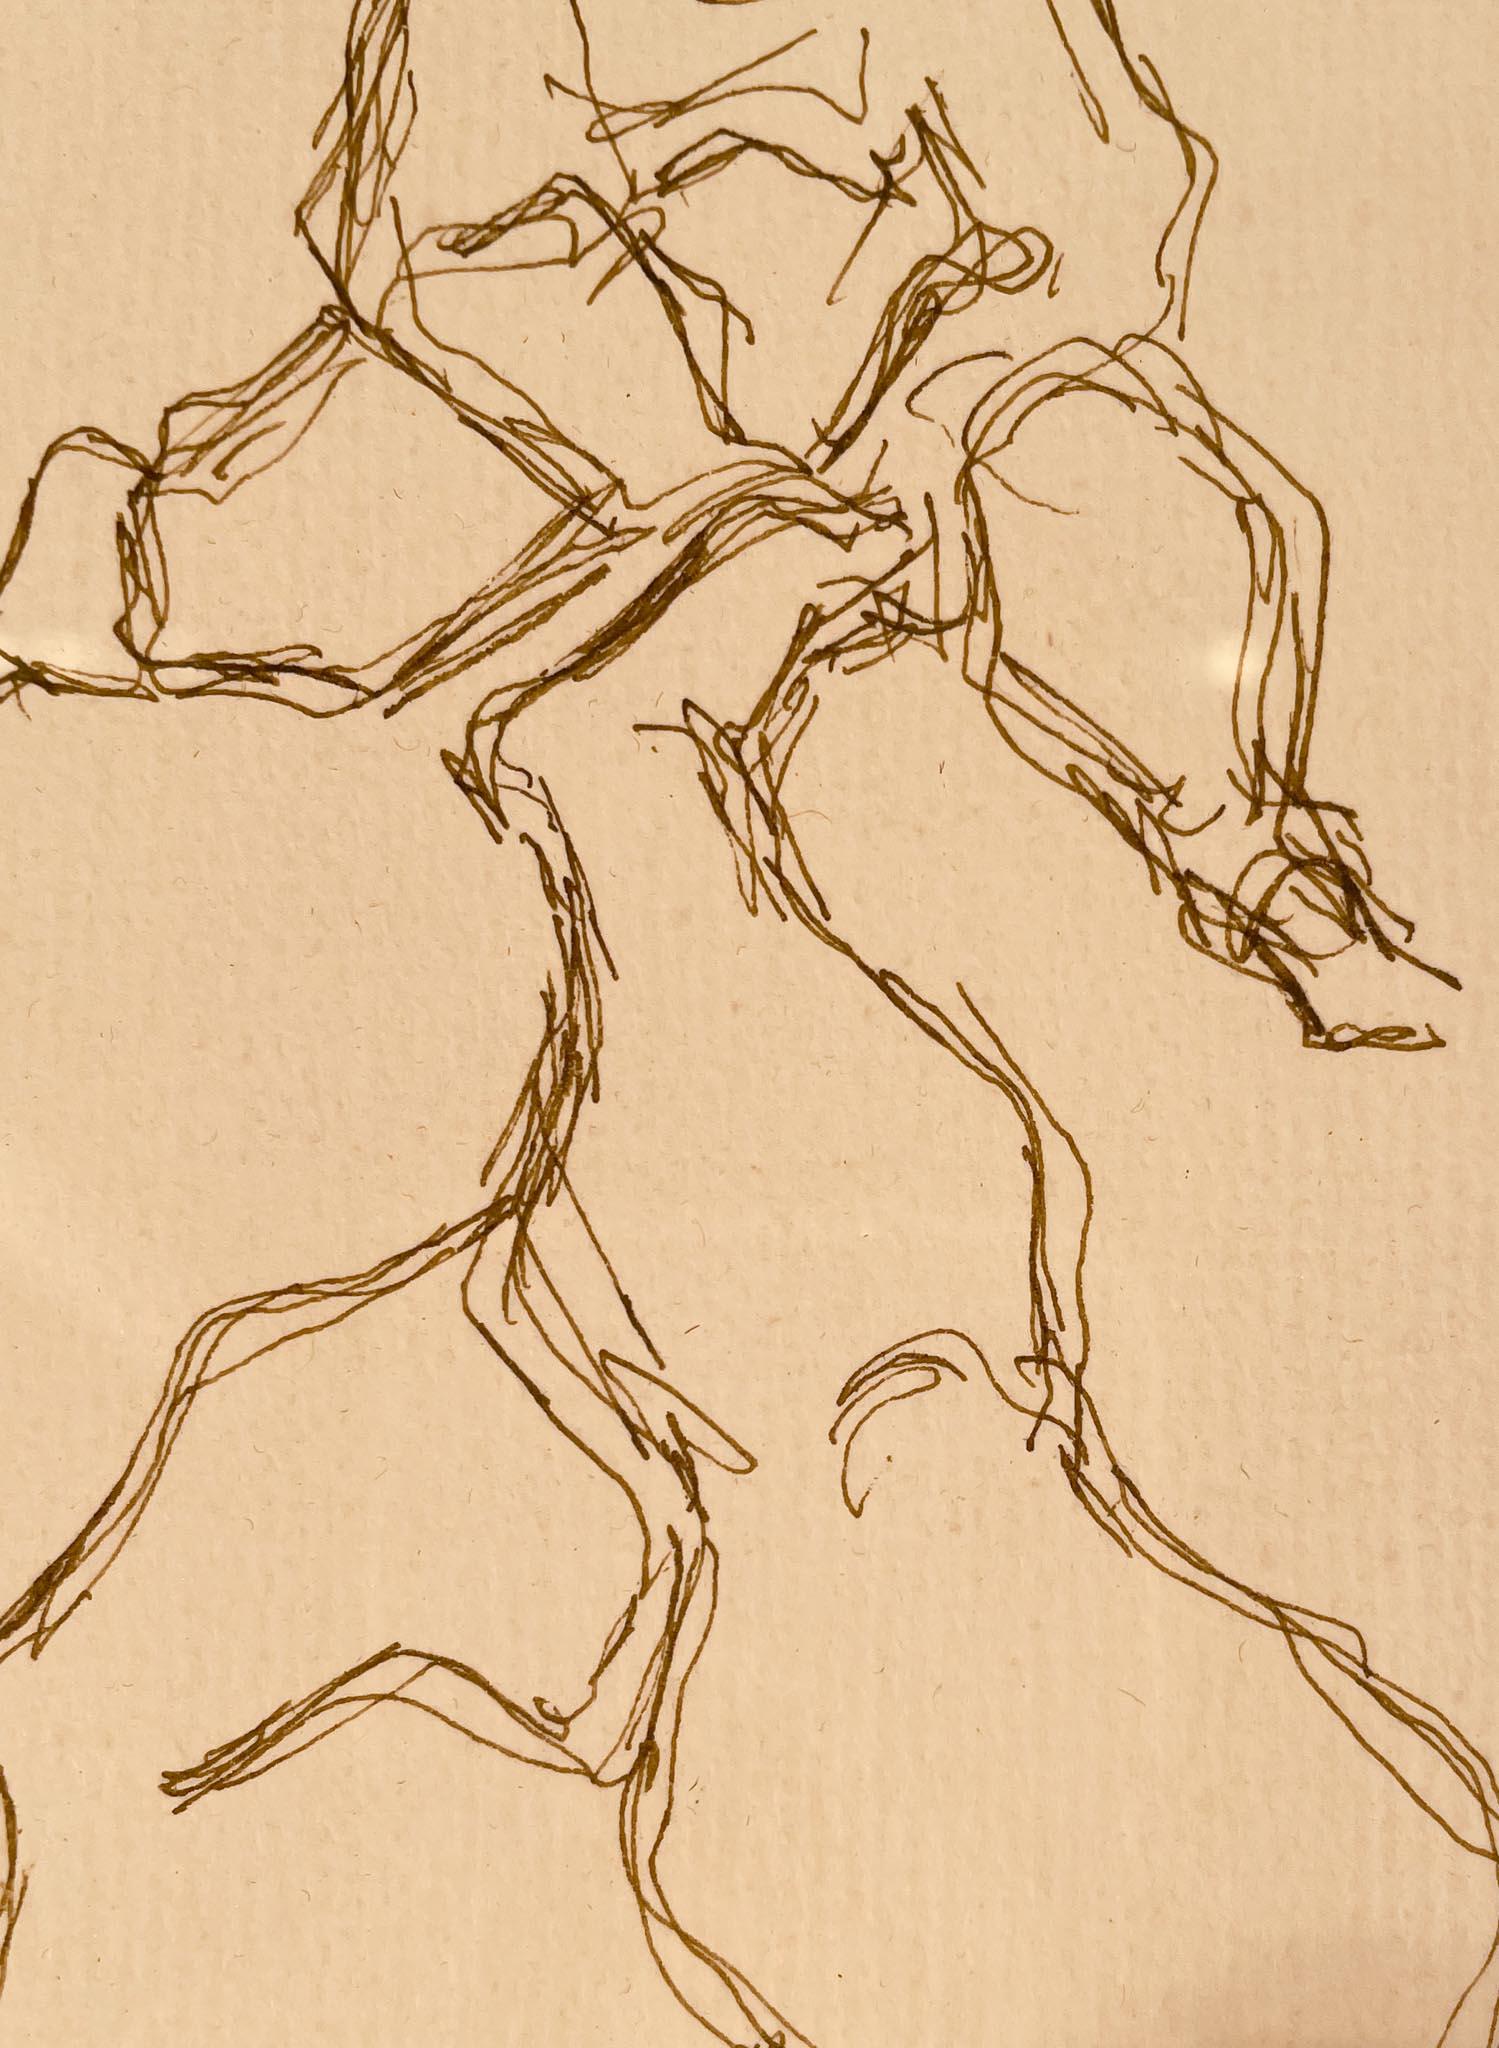 Étude pour la sculpture d'une femme nue en équilibre sur un bébé, 1949, par Chaim Gross (1902-1991)
Encre sur papier
10 ½ x 7 ½ pouces non encadré (26.67 x 19.05 cm)
16 ½ x 13 ¾ pouces encadré (41.91 x 34.925 cm)
Signé et daté en bas à